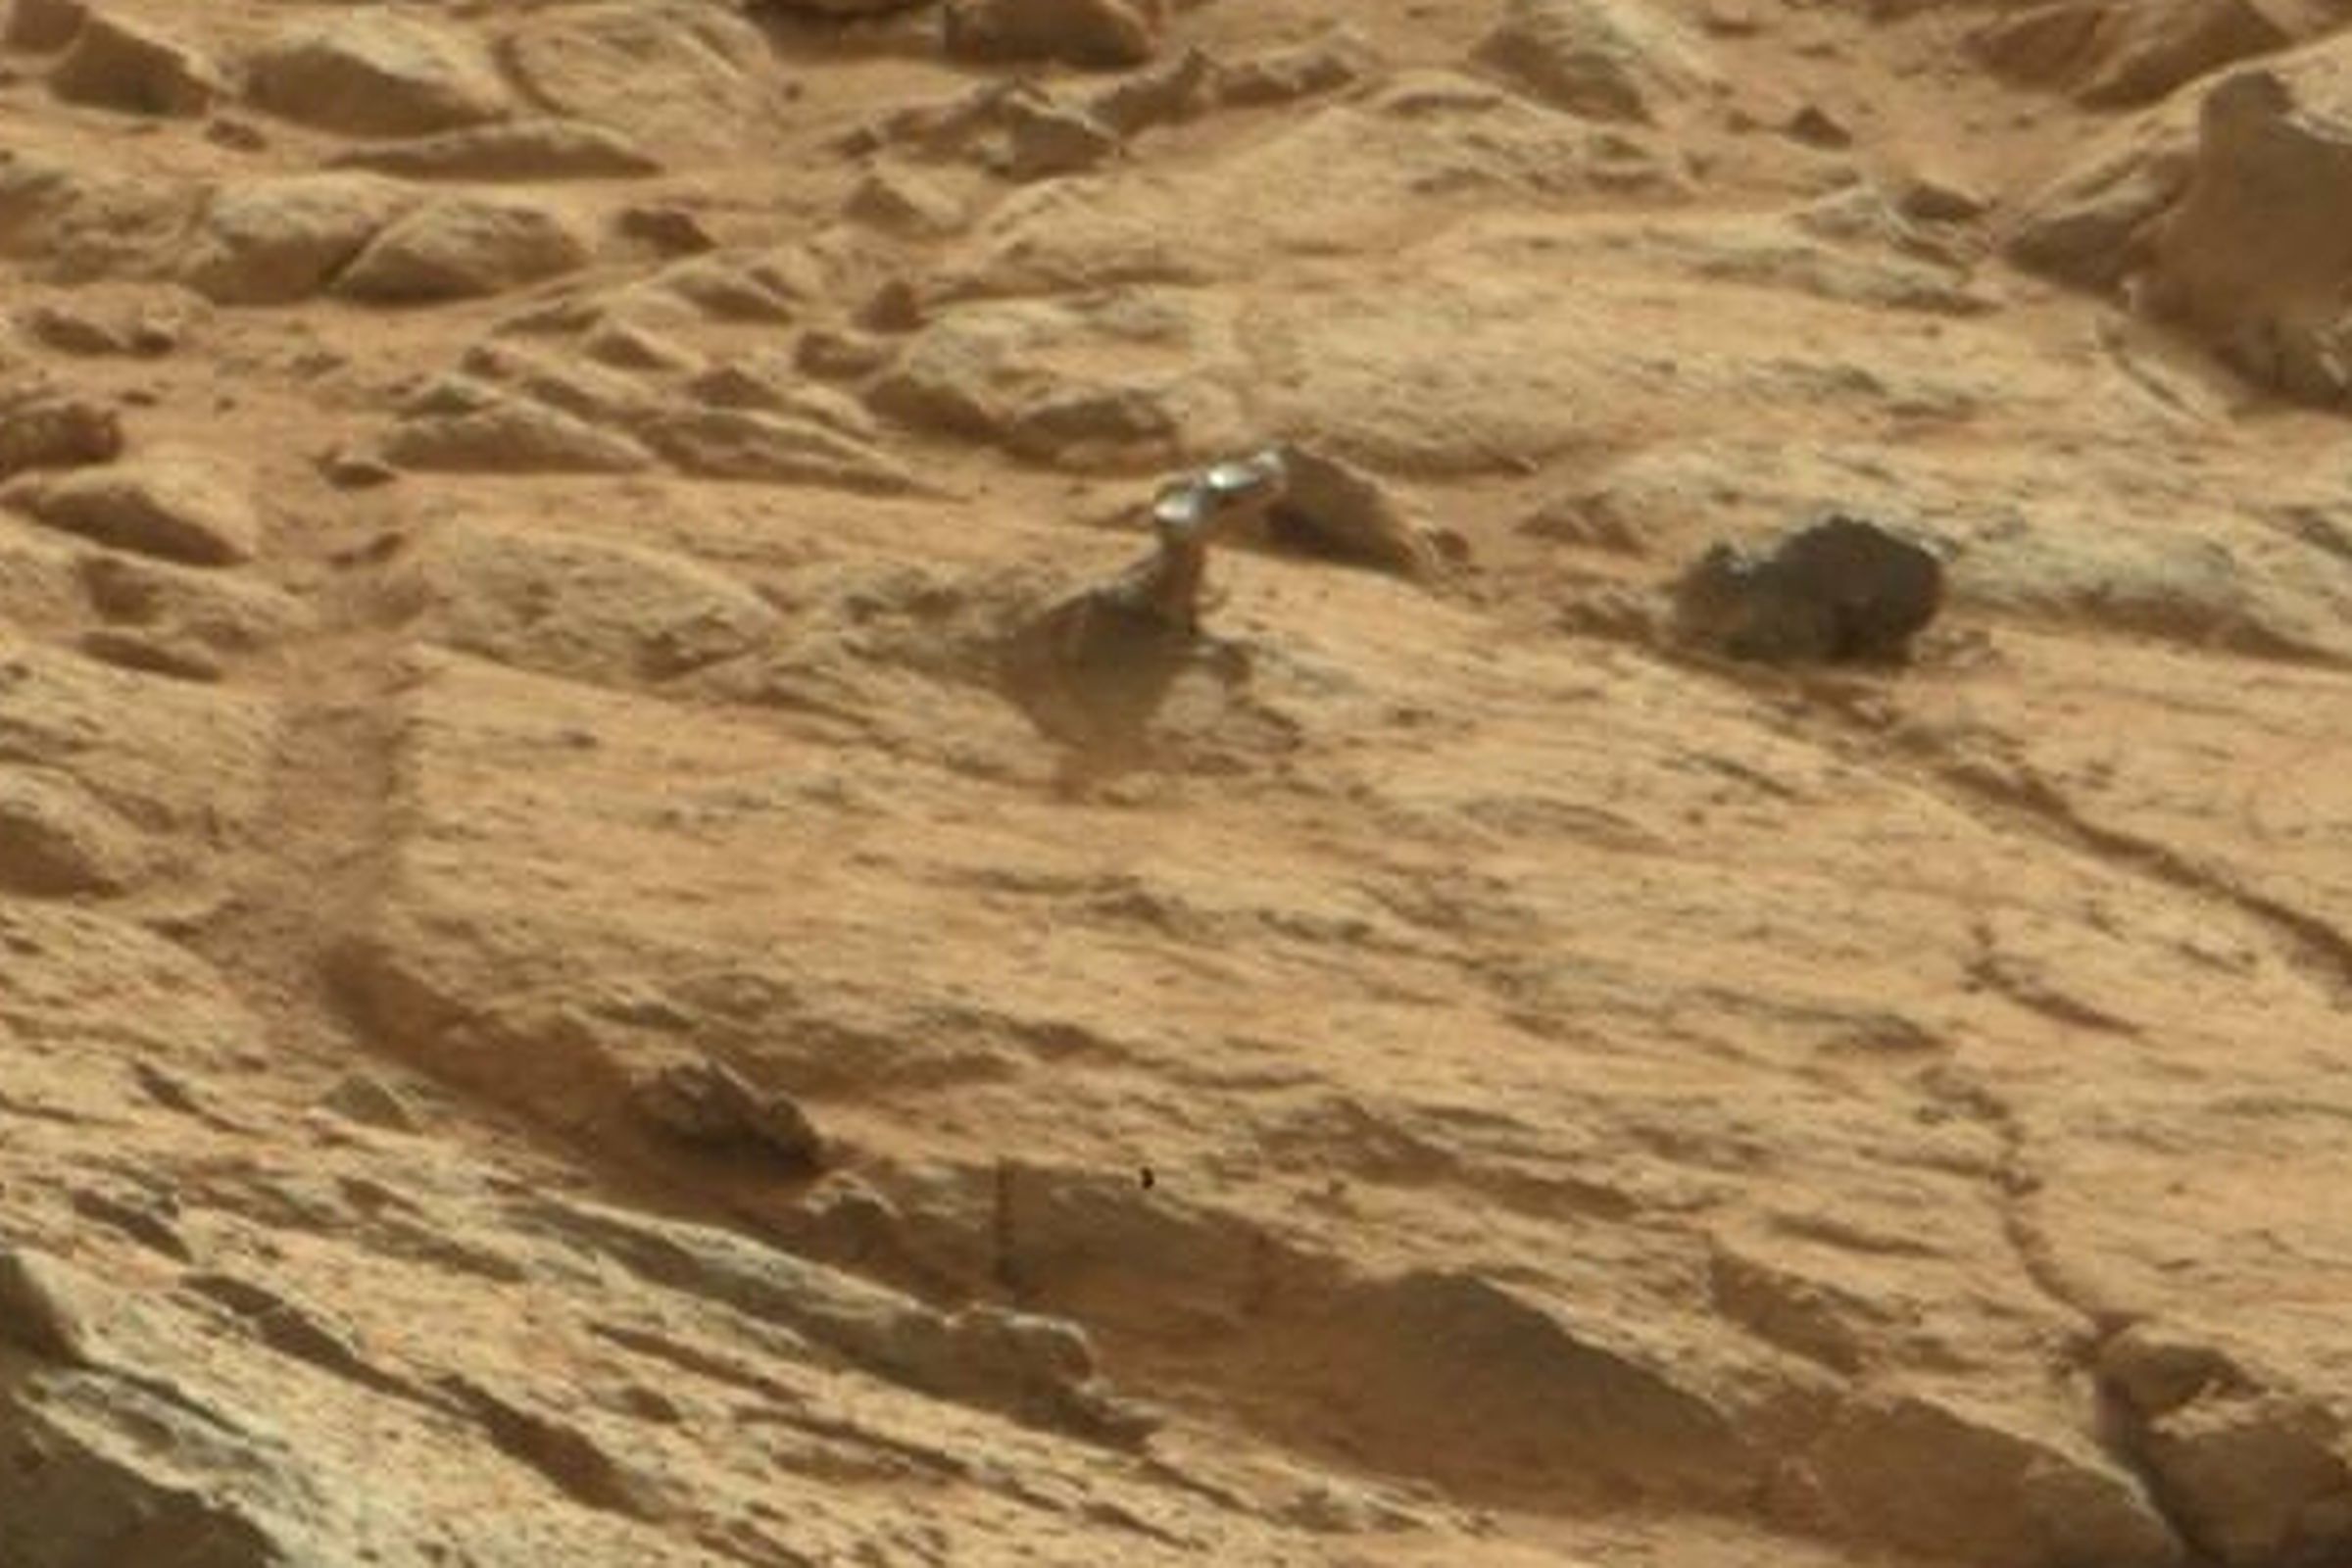 Mars mystery object curiosity rover